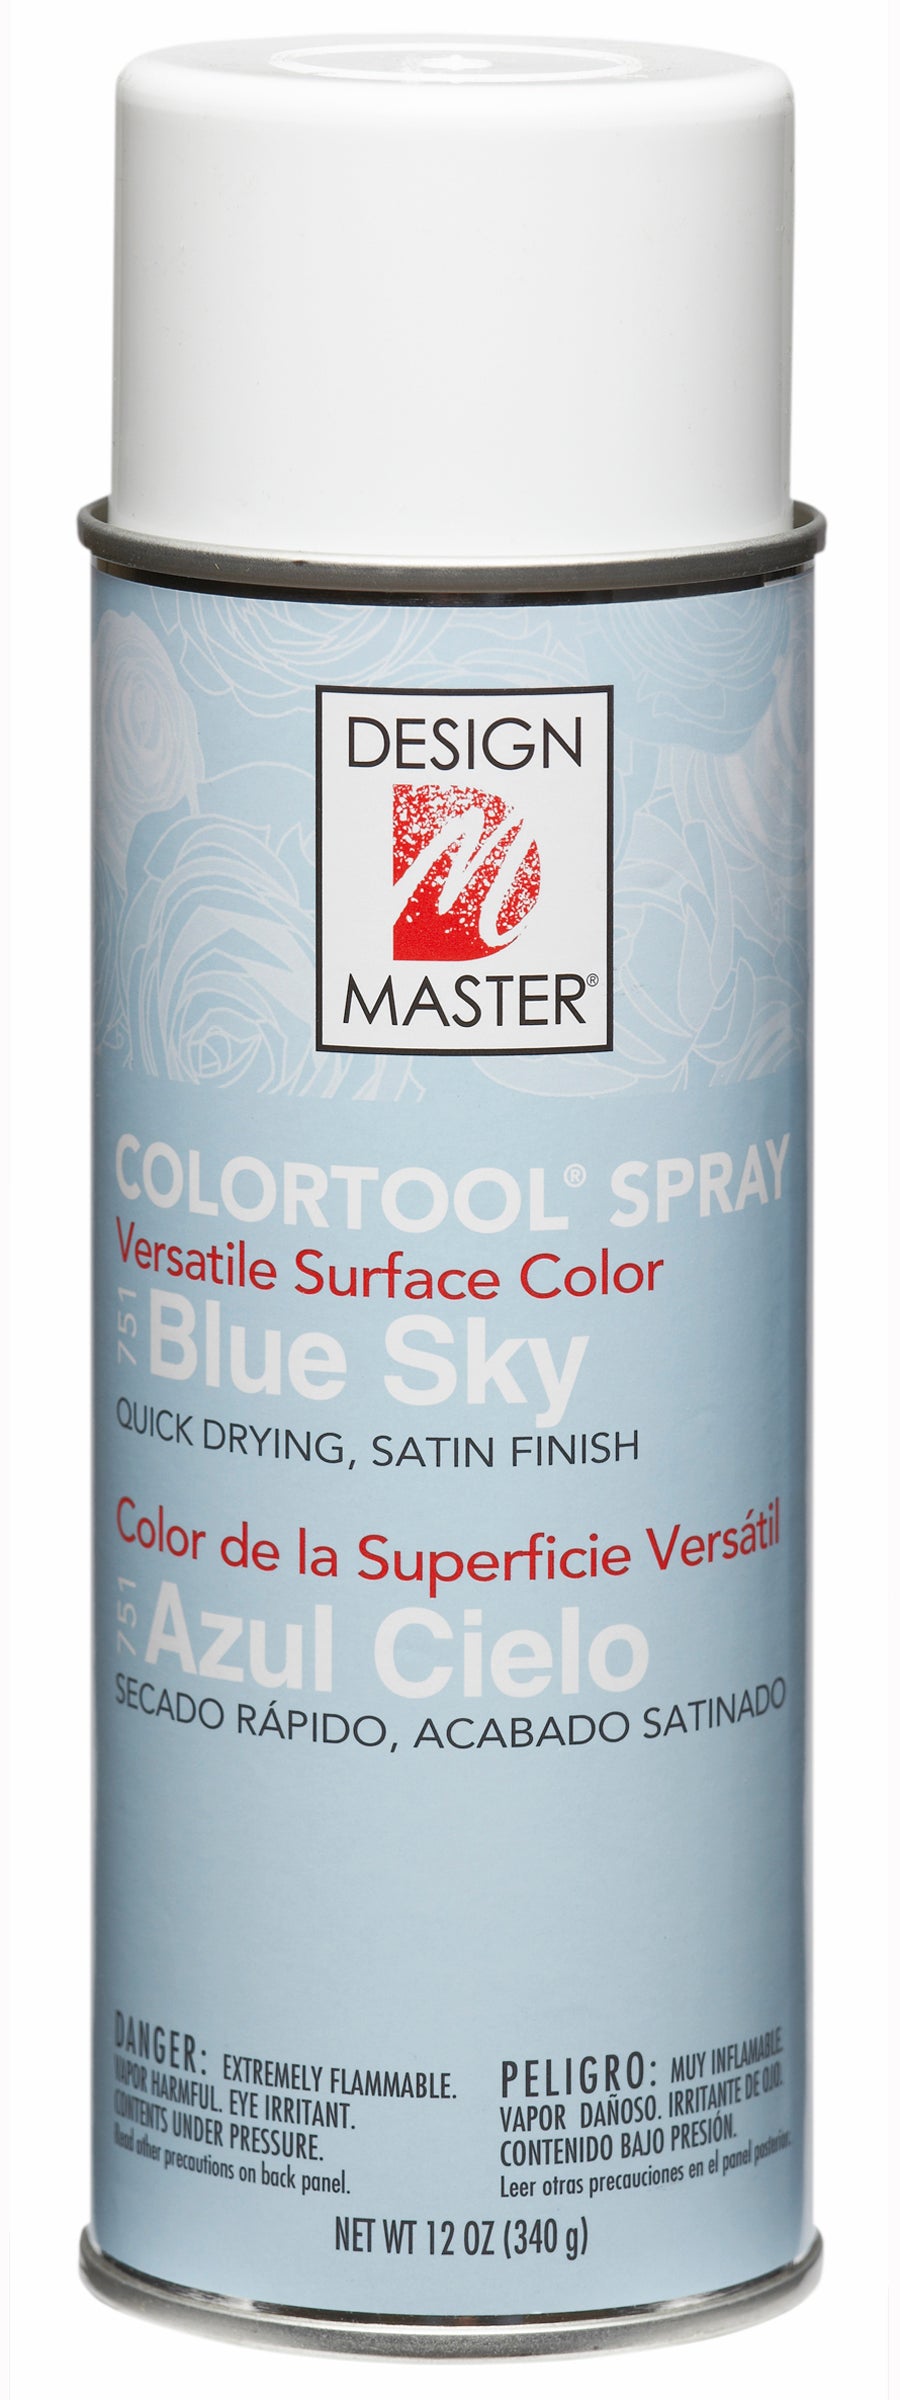 Design Master Colortool Spray-Blue Sky